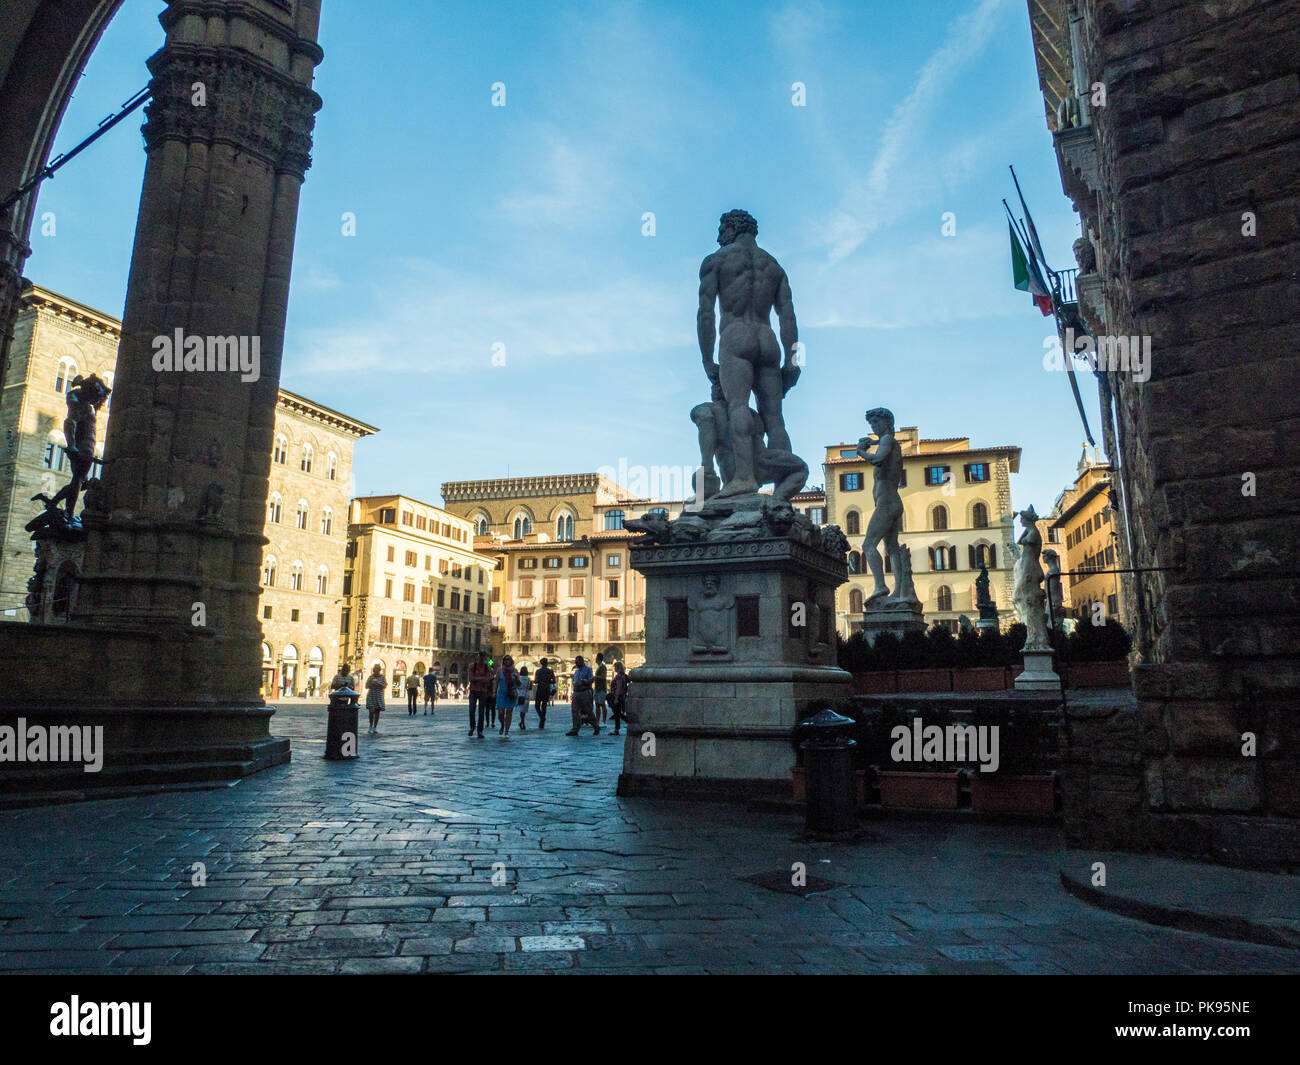 Artwork in Piazza della Signoria in Florence, Tuscany, Italy Stock Photo